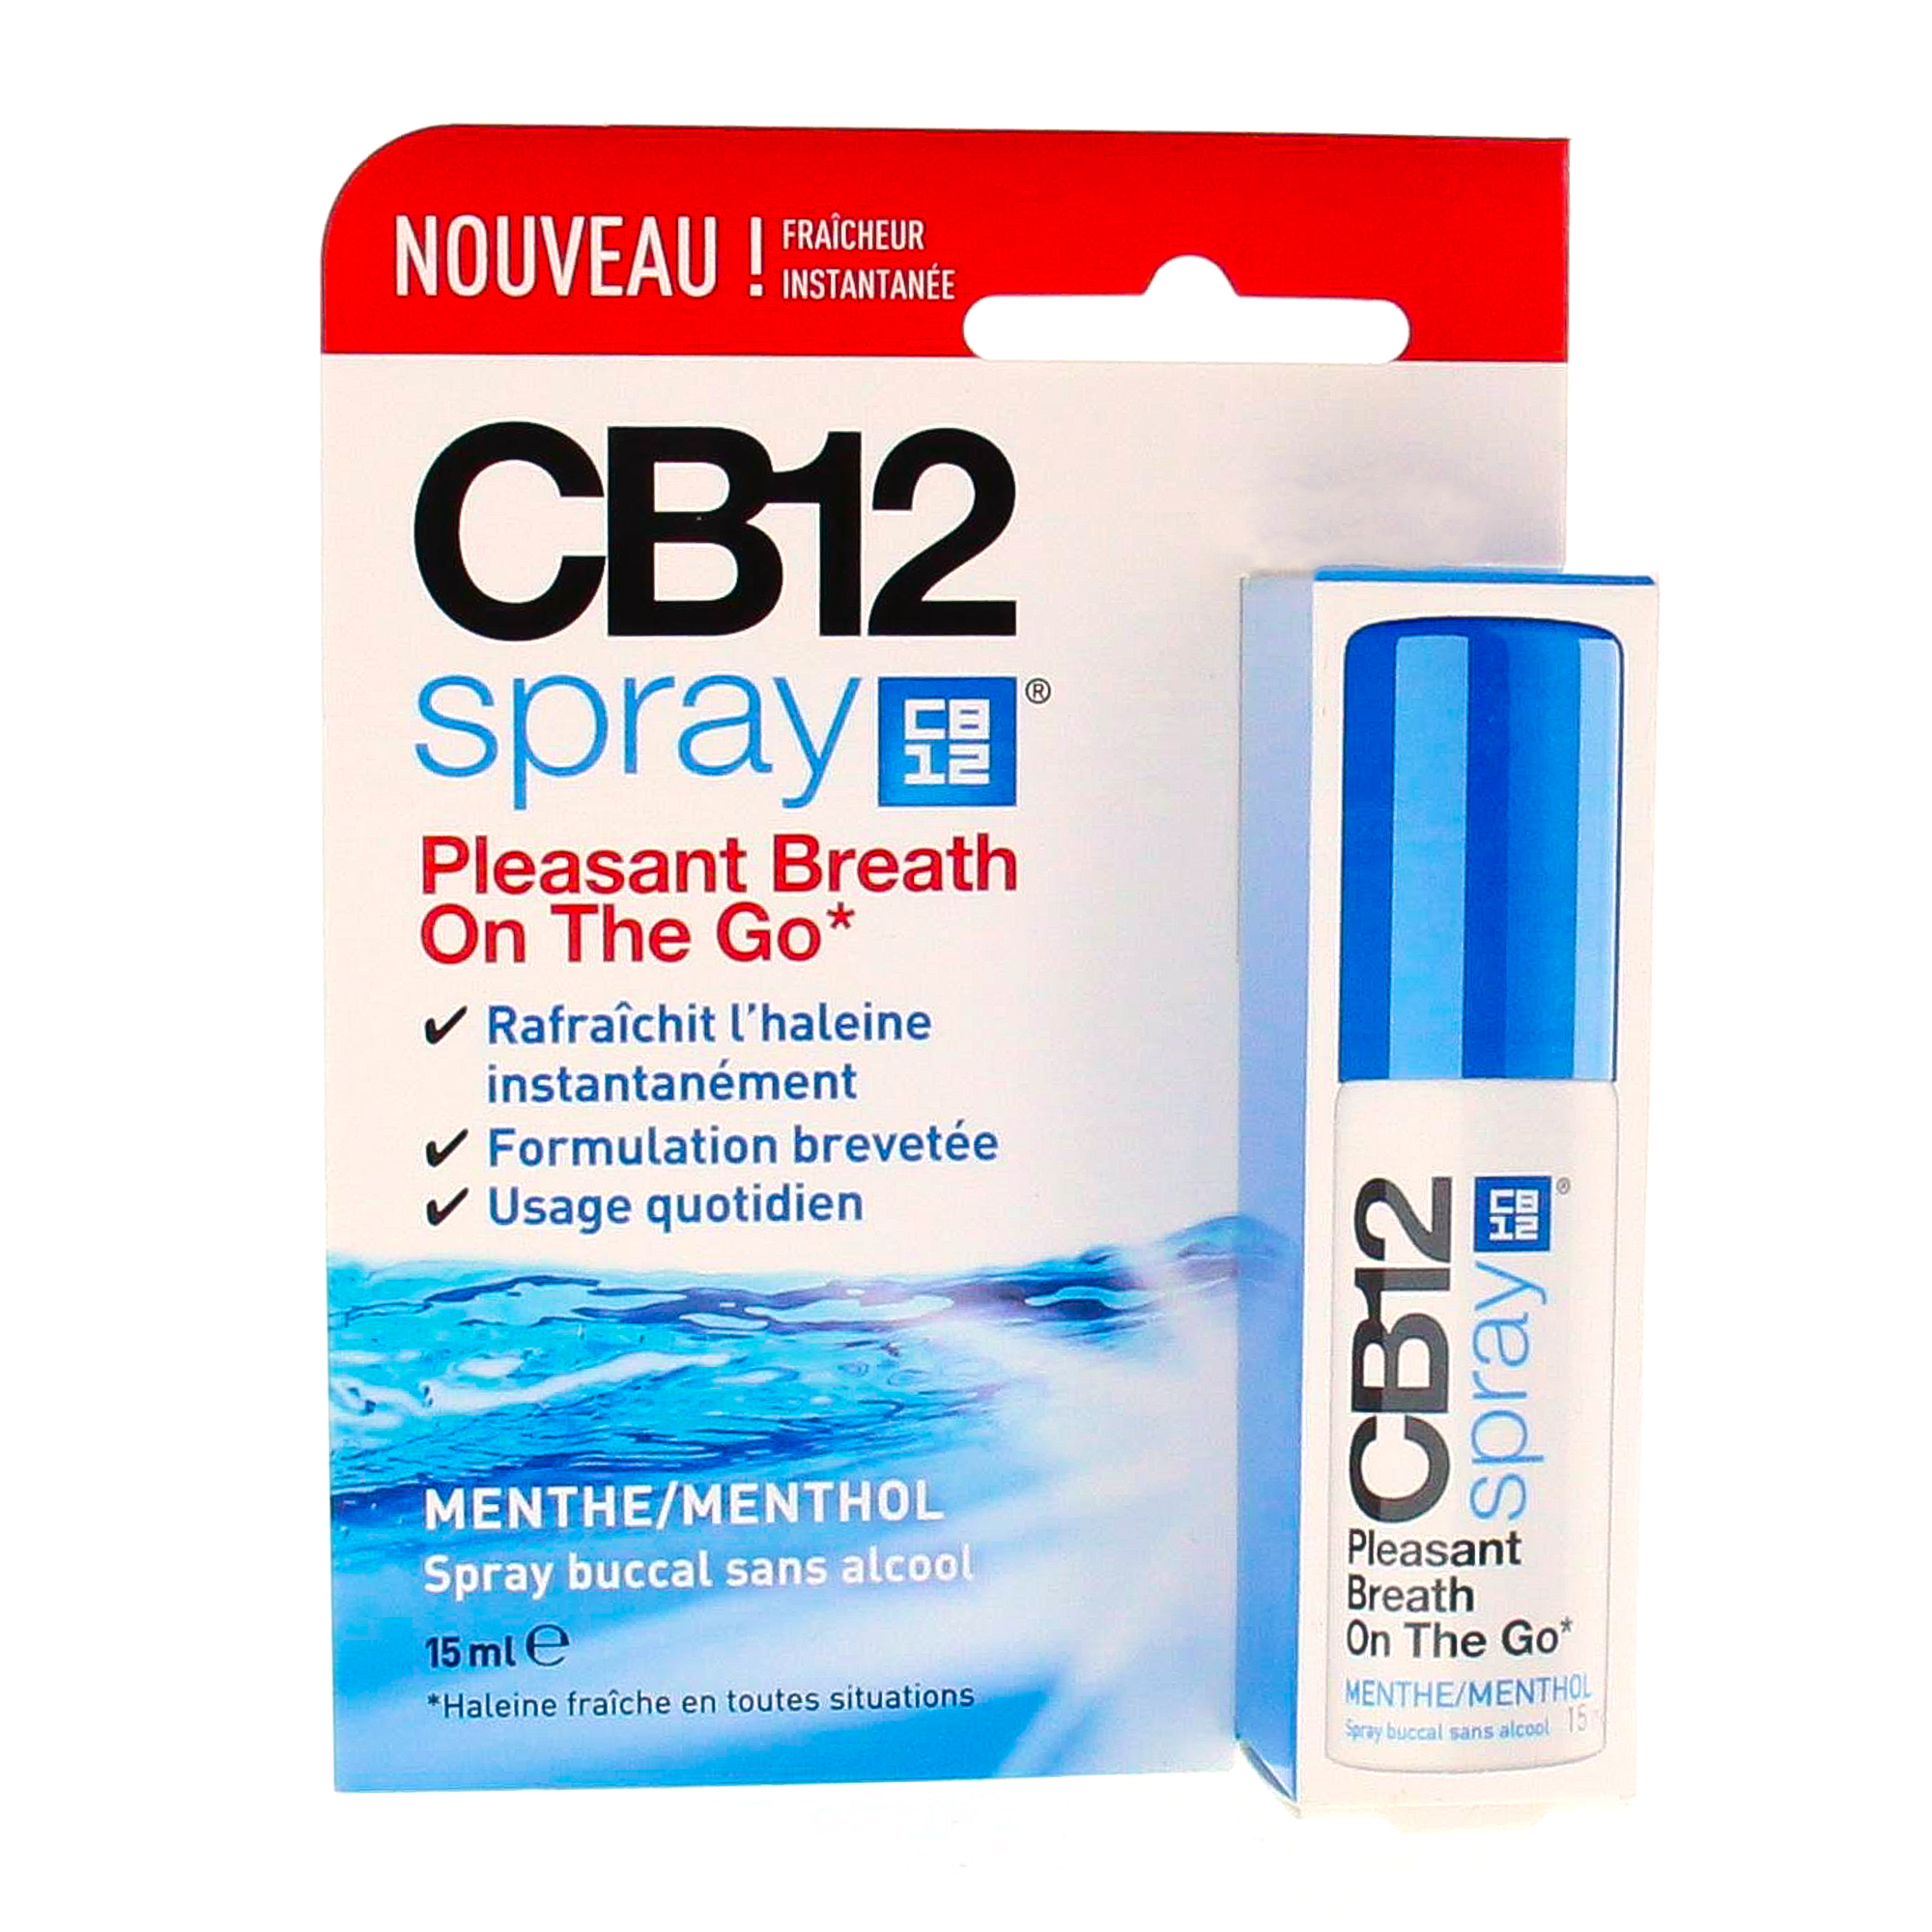 CB12 Spray buccal sans alcool spray 15ml - Parapharmacie Prado Mermoz